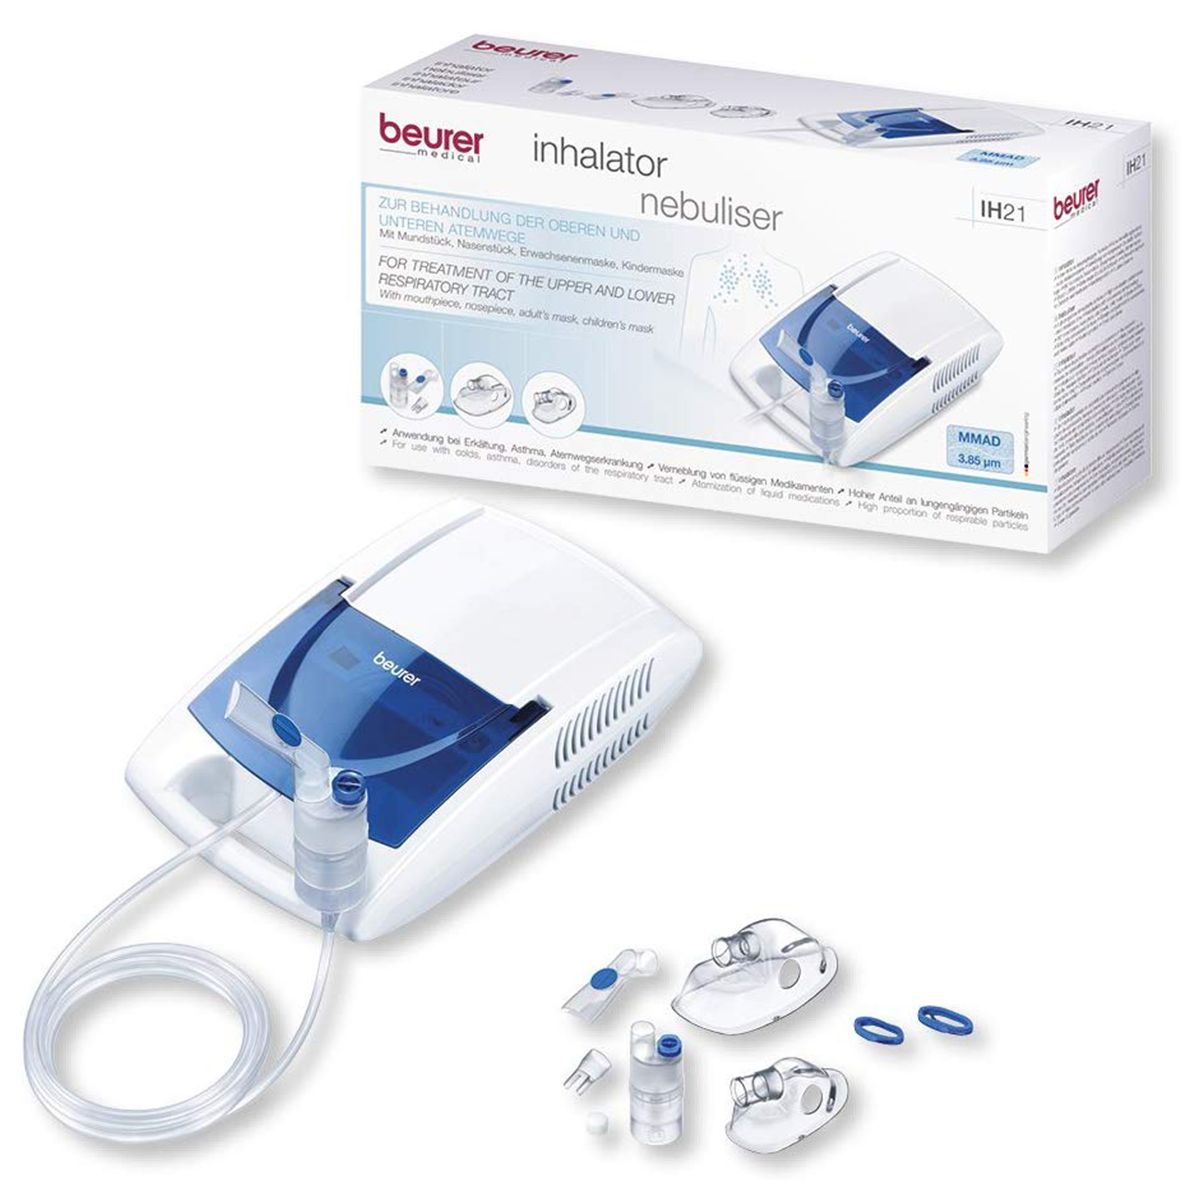 بويرر، Ih21، جهاز استنشاق البخار، نيبوليزر، لمرضى الجهاز التنفس - 1 جهاز